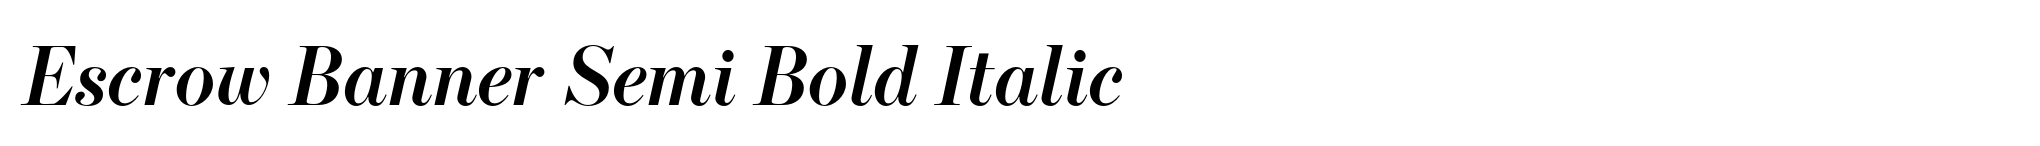 Escrow Banner Semi Bold Italic image